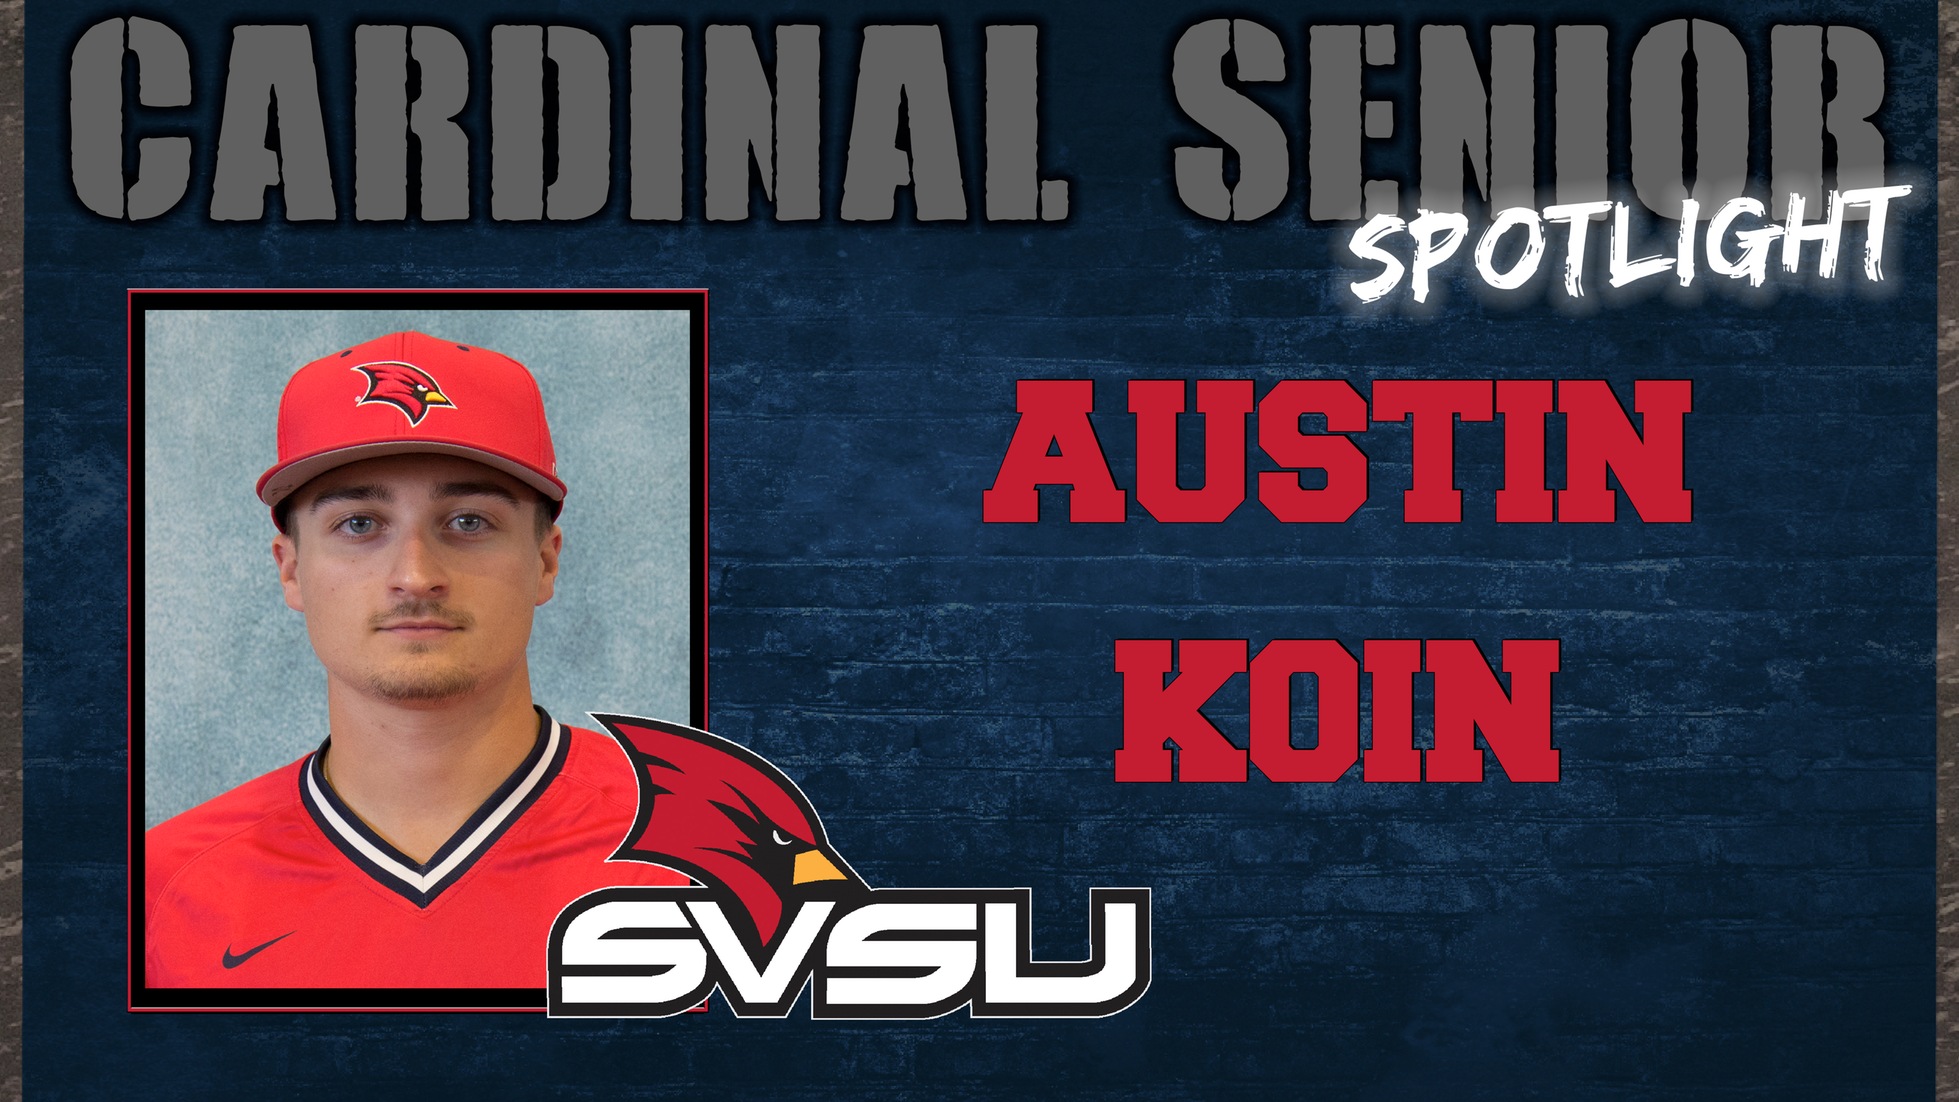 SVSU Cardinal Senior Spotlight - Austin Koin